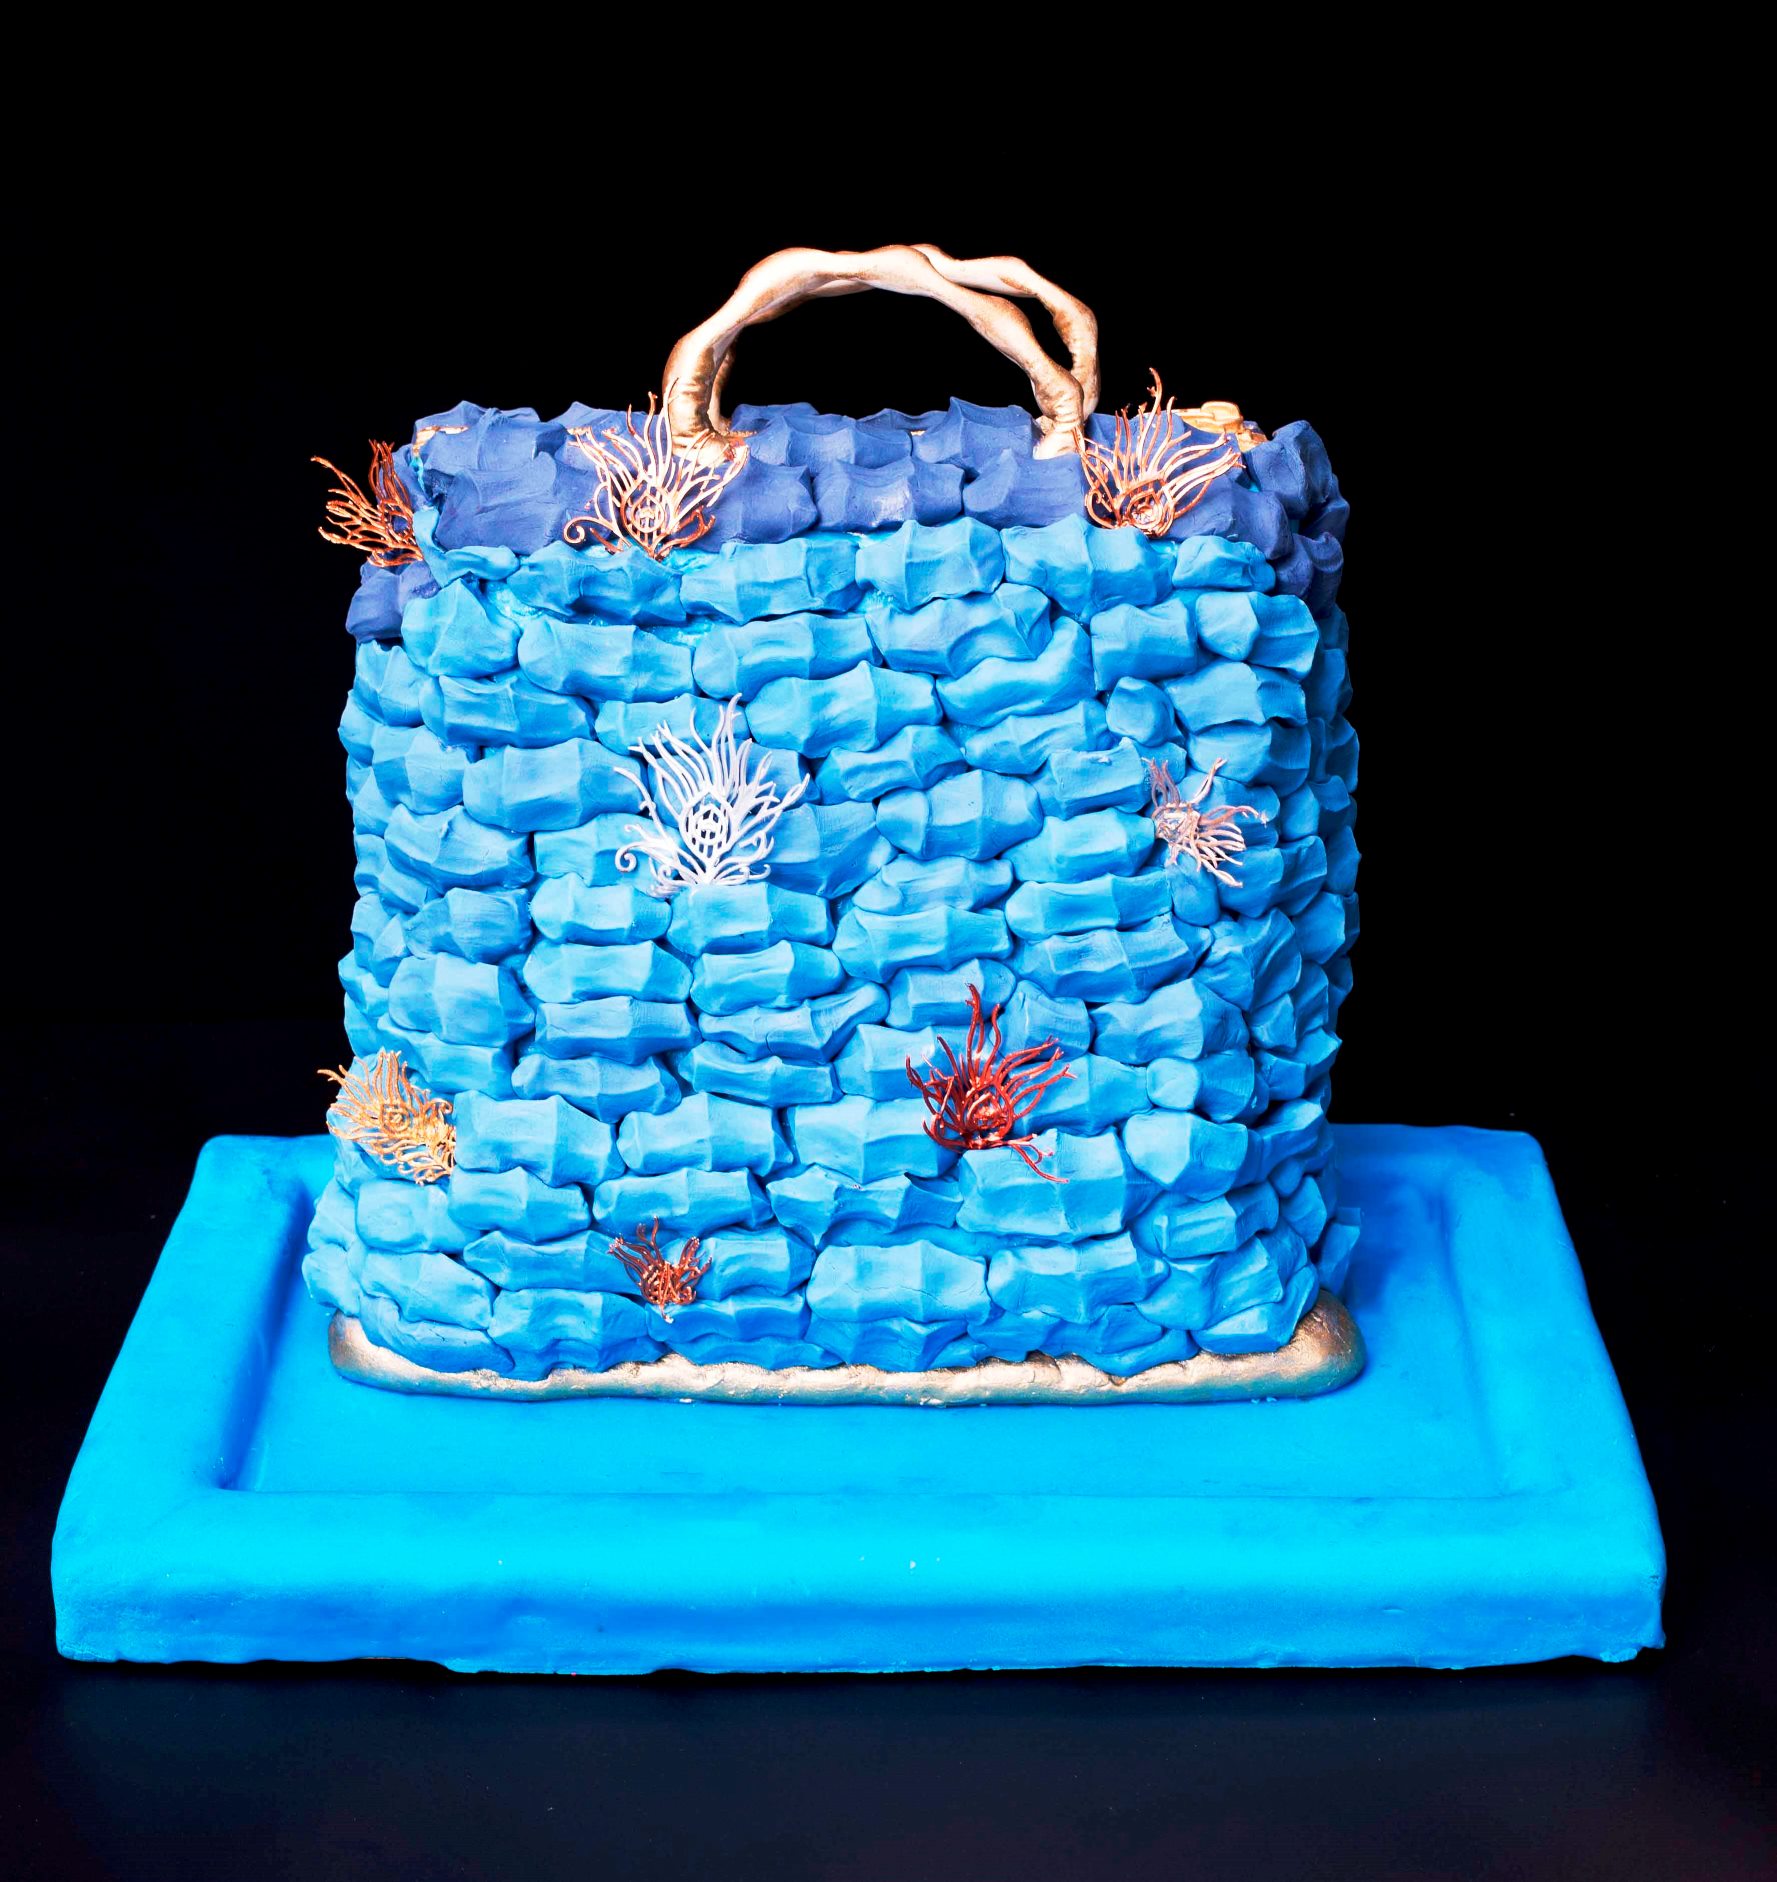  עוגה בצורת סל. עיצוב וצילום מאיה פרי דפנא